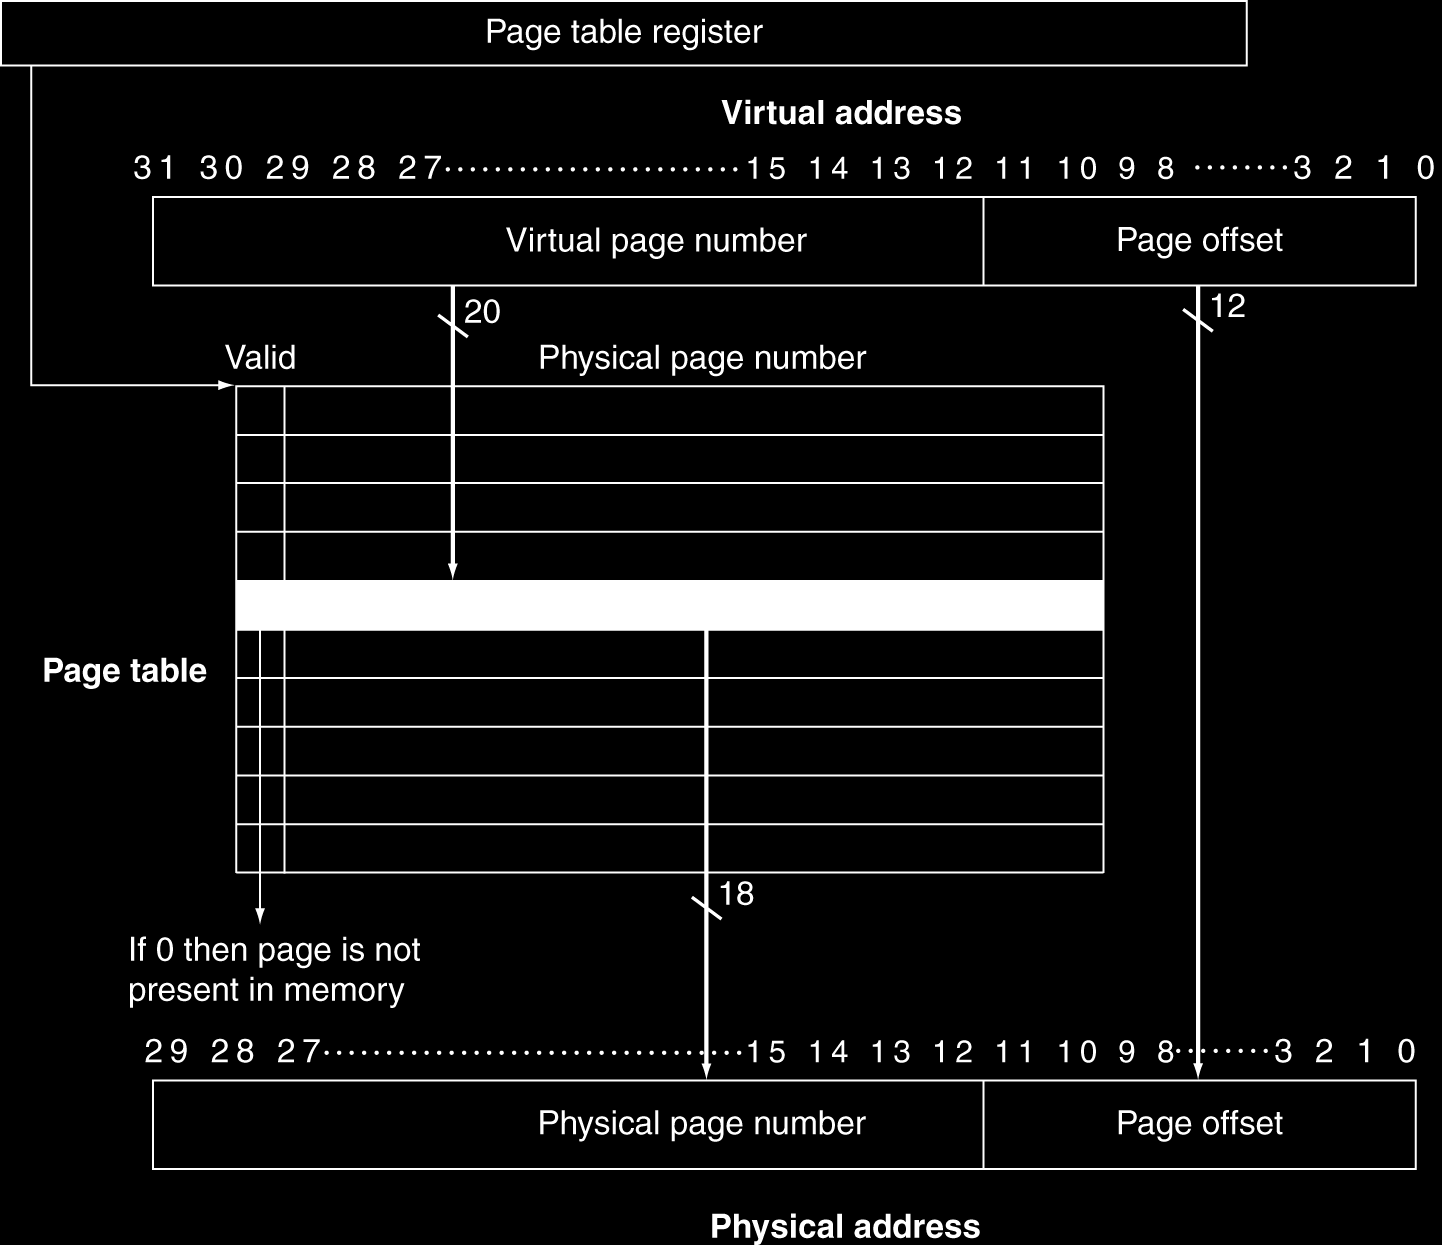 Πίνακας σελίδων και μετάφραση Κάθε γραμμή του πίνακα σελίδων περιέχει τον αριθμό της φυσικής σελίδας (PPN), και το valid bit. Εάν valid bit = 1, η φυσική σελίδα είναι στην κύρια μνήμη.